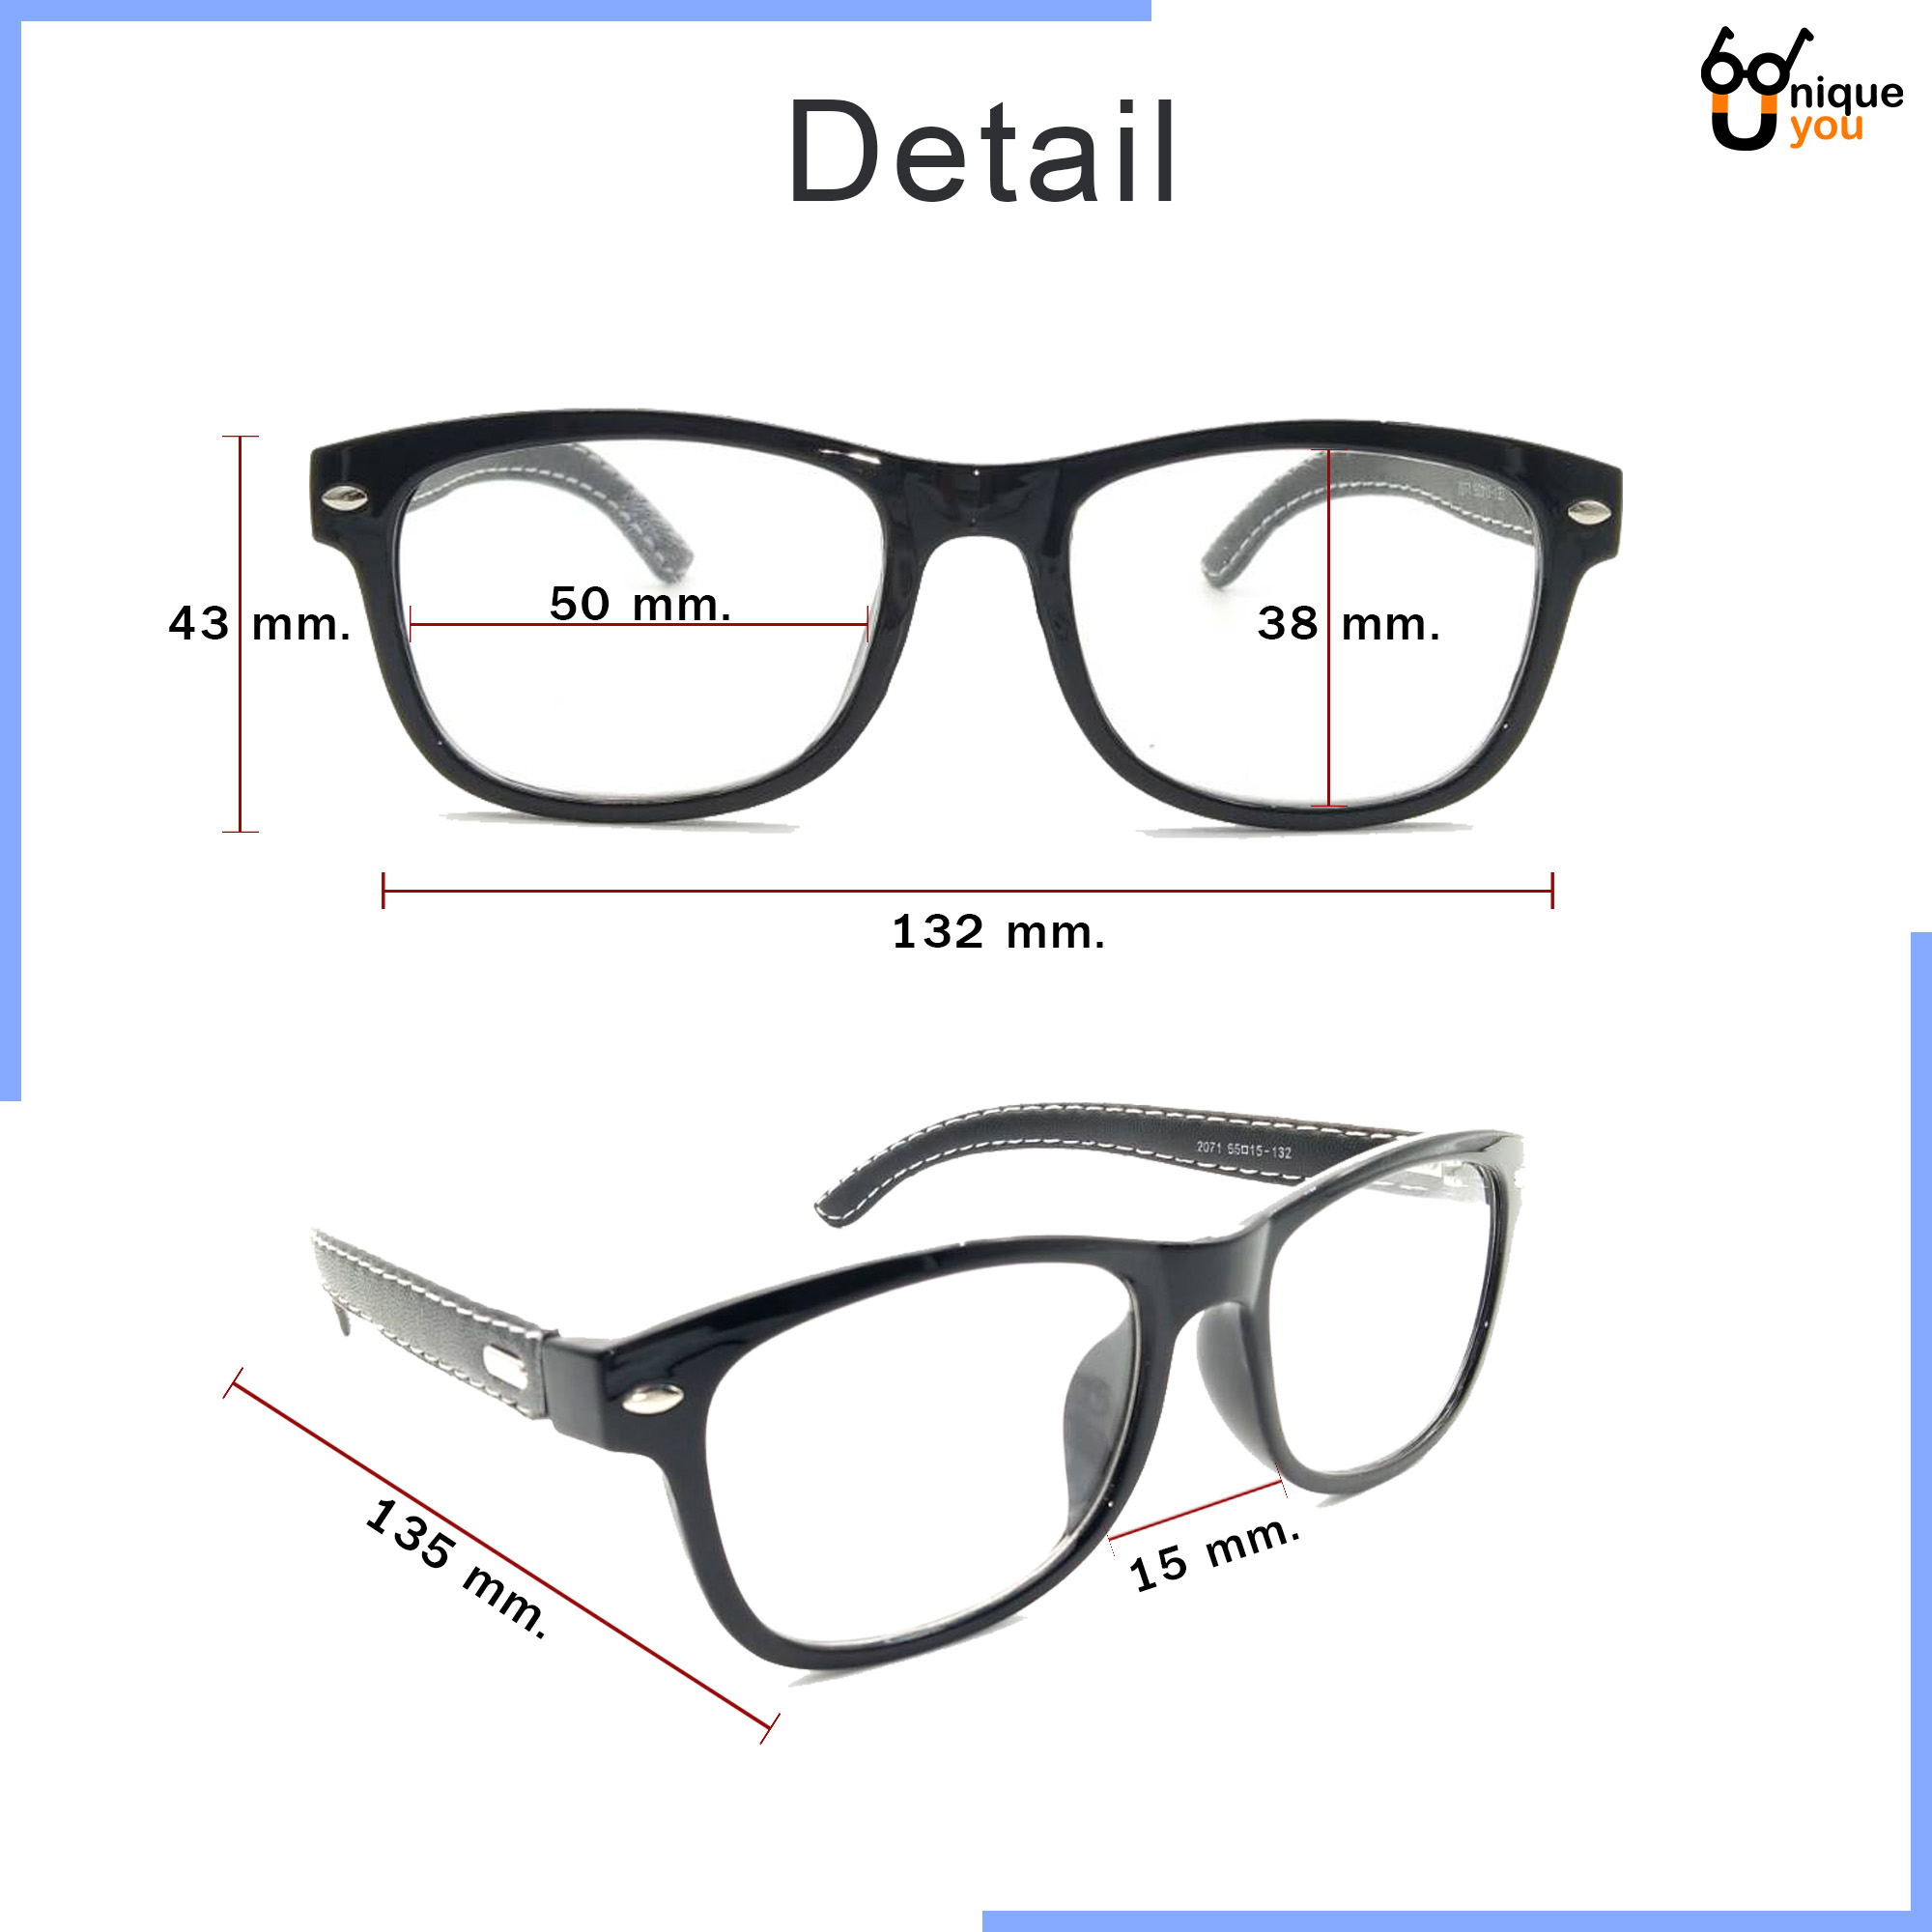 เกี่ยวกับ Uniq แว่นสายตายาว แว่นสายตาสั้น ขาหนังPU กรอบแว่นหนังPU แว่นสายตา+กรอบแว่นตา แว่นสายตายาว-สั้น